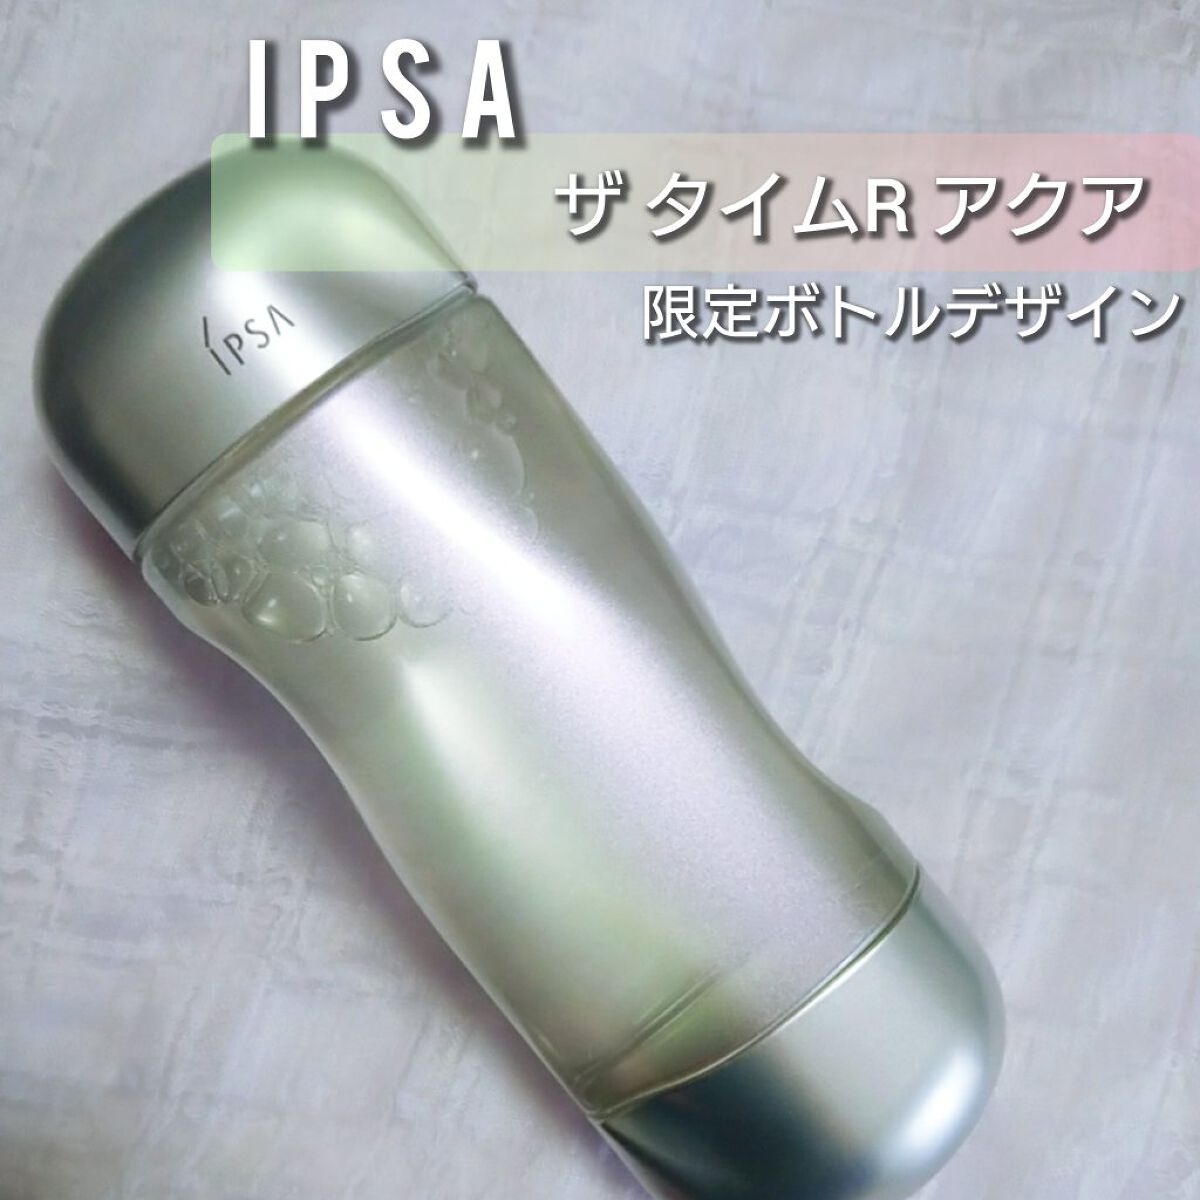 ザ・タイムR アクア 200ml 限定デザインボトル / IPSA(イプサ) | LIPS